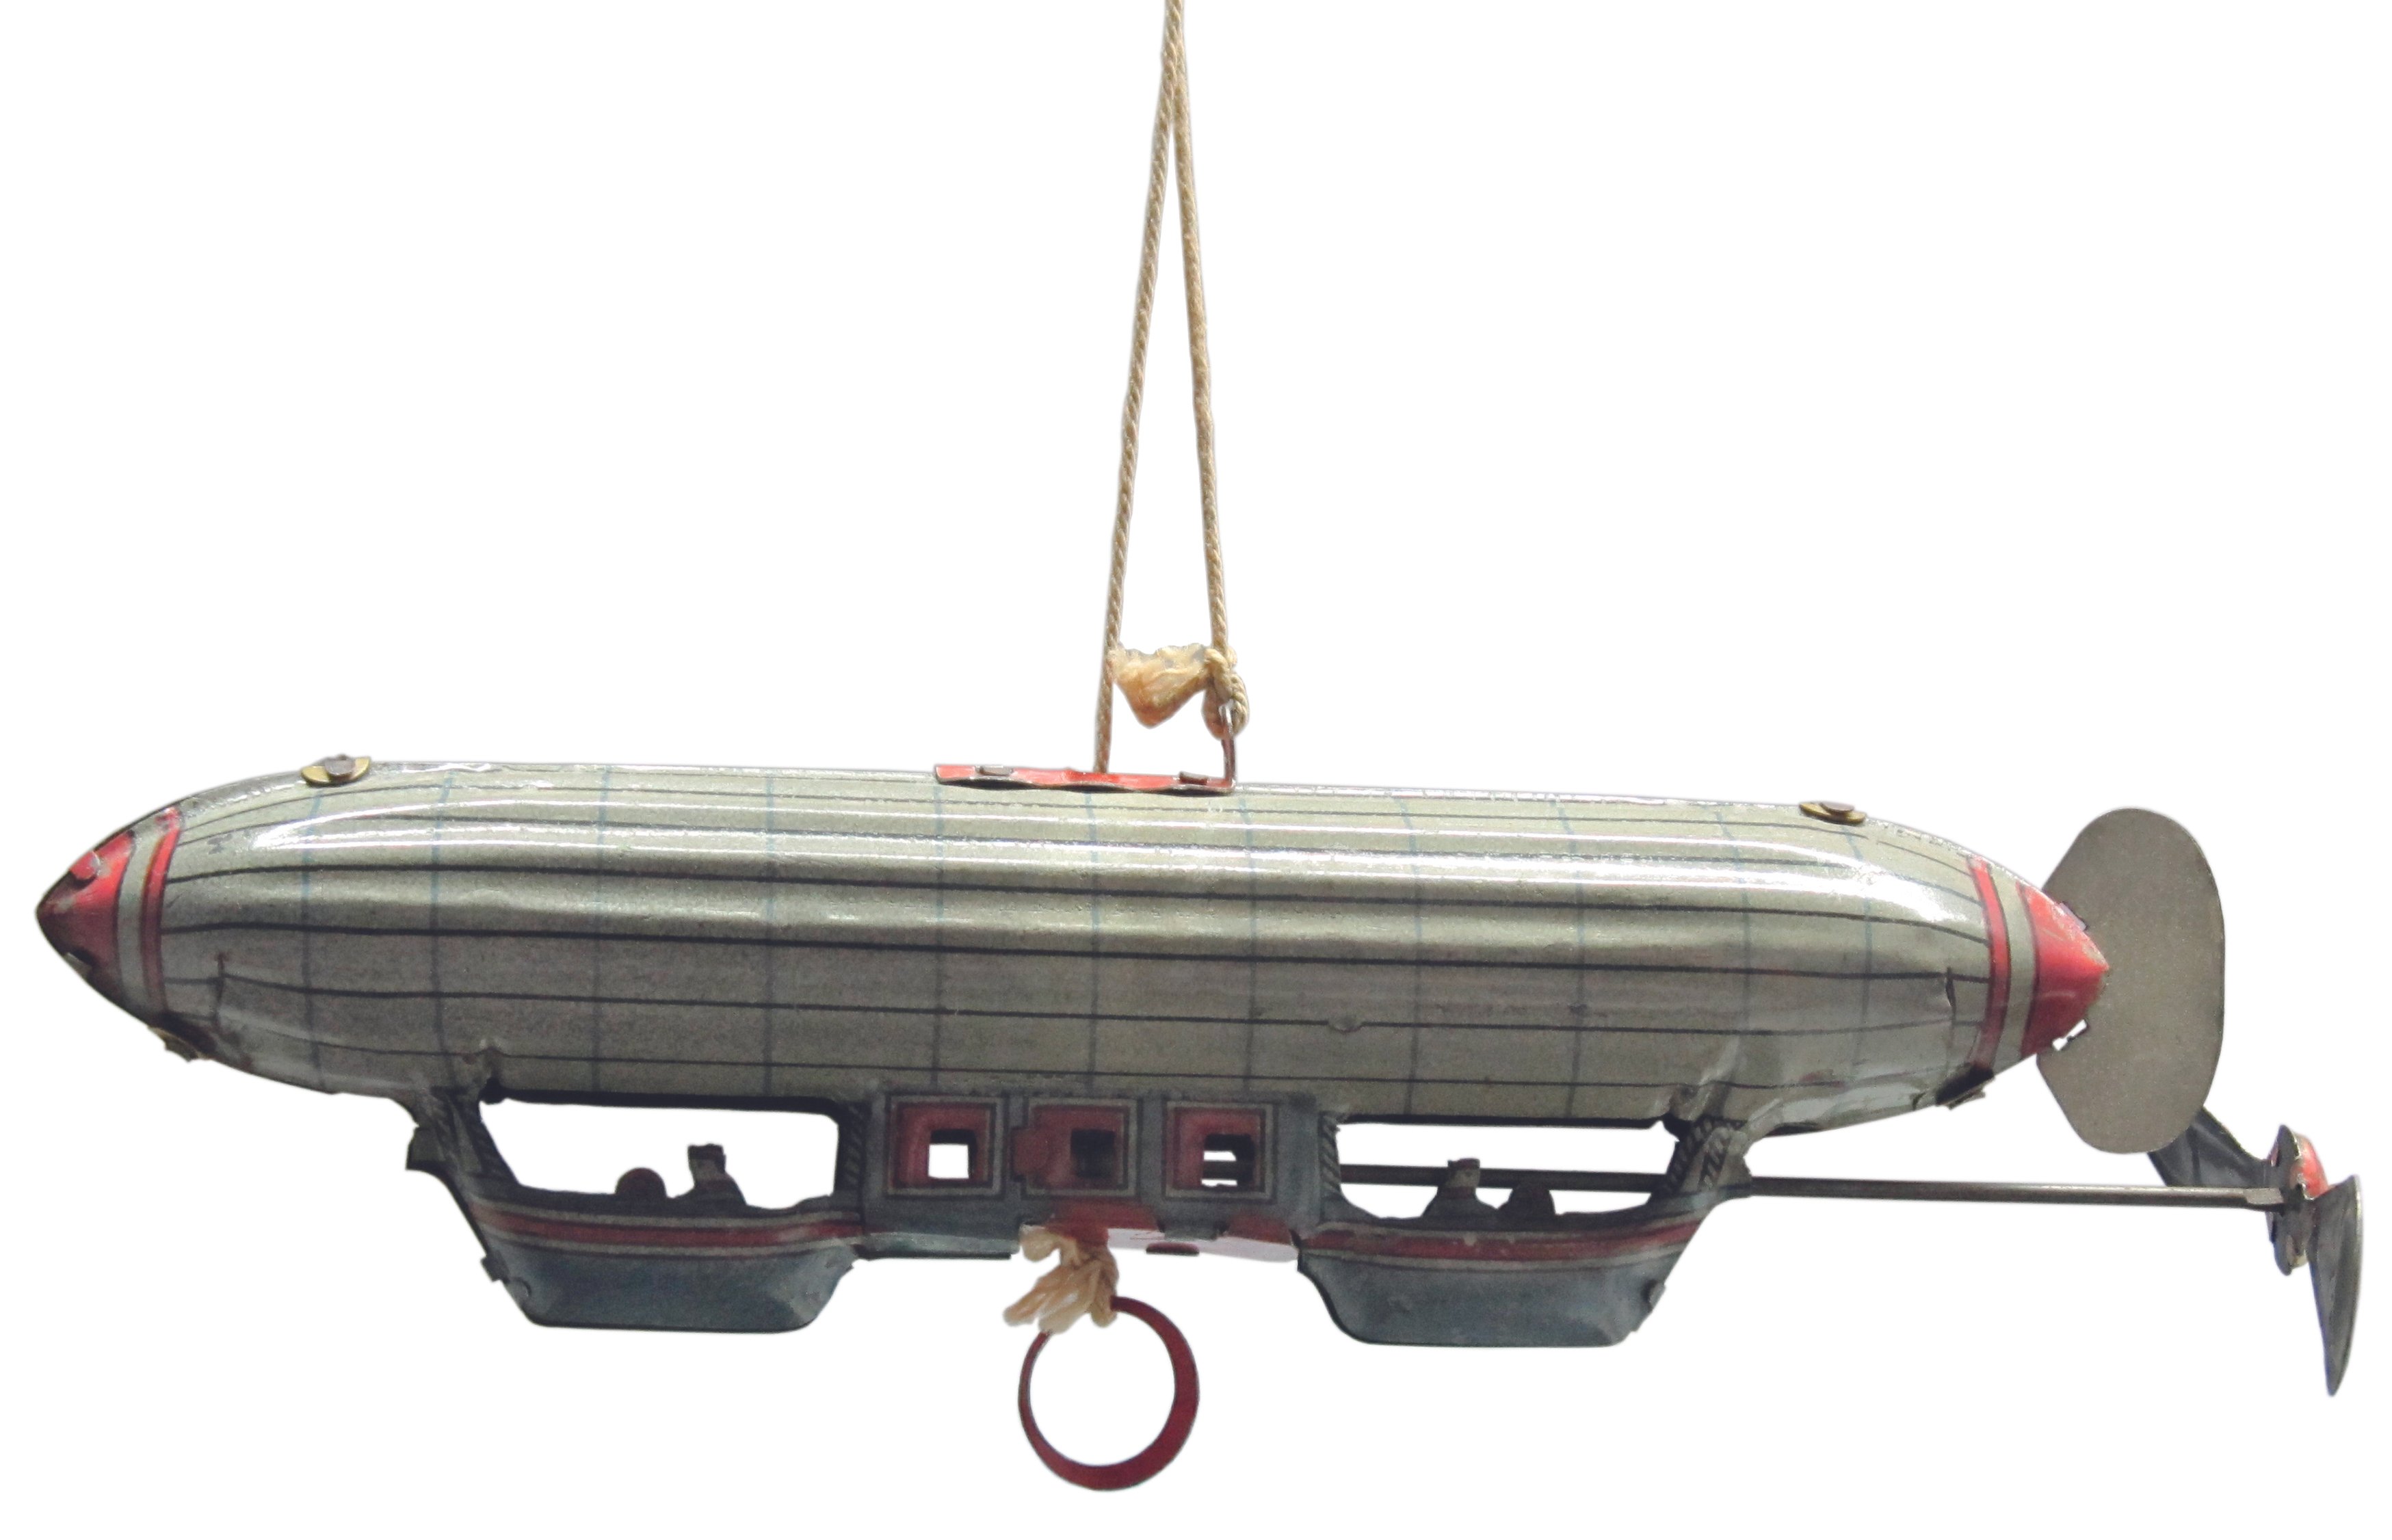 Blechspielzeug an einer Schnur in Form eines Luftschiffes (Zeppelin Museum Friedrichshafen GmbH CC BY-NC-SA)